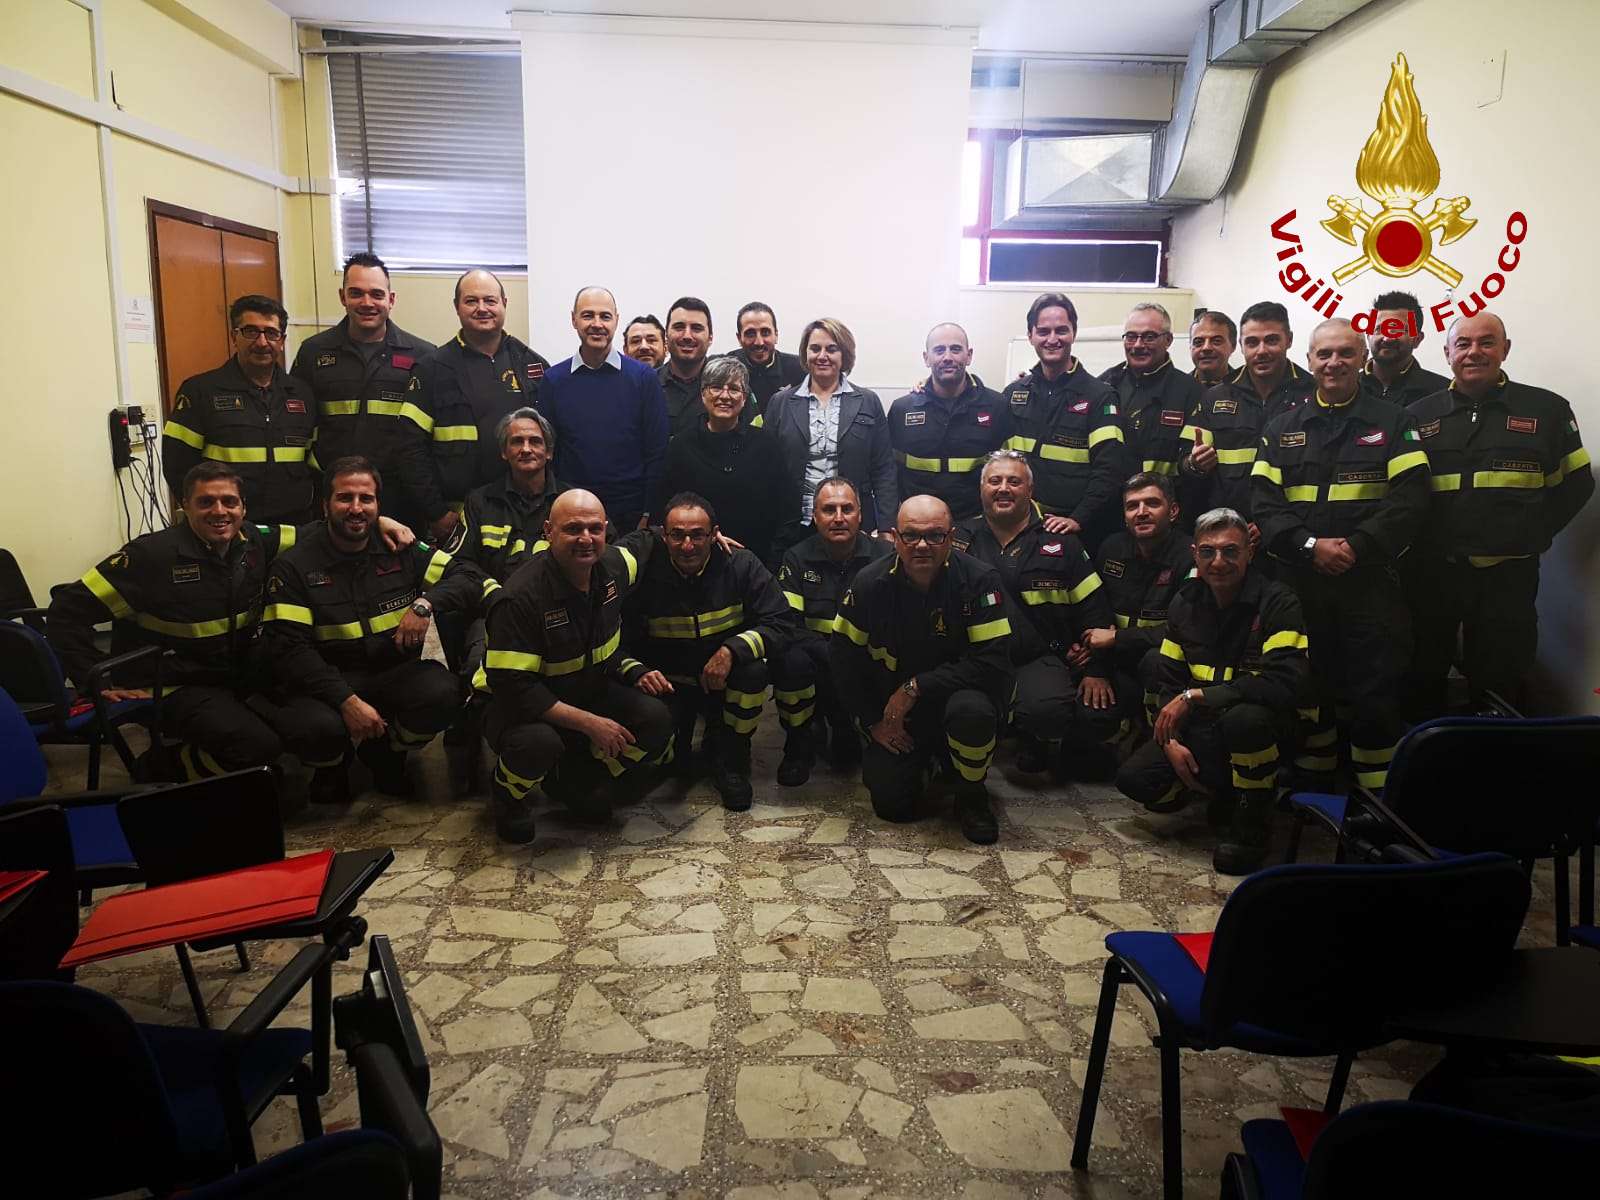 Benevento| Vigili del Fuoco, terminato corso per addetto al servizio prevenzione e protezione